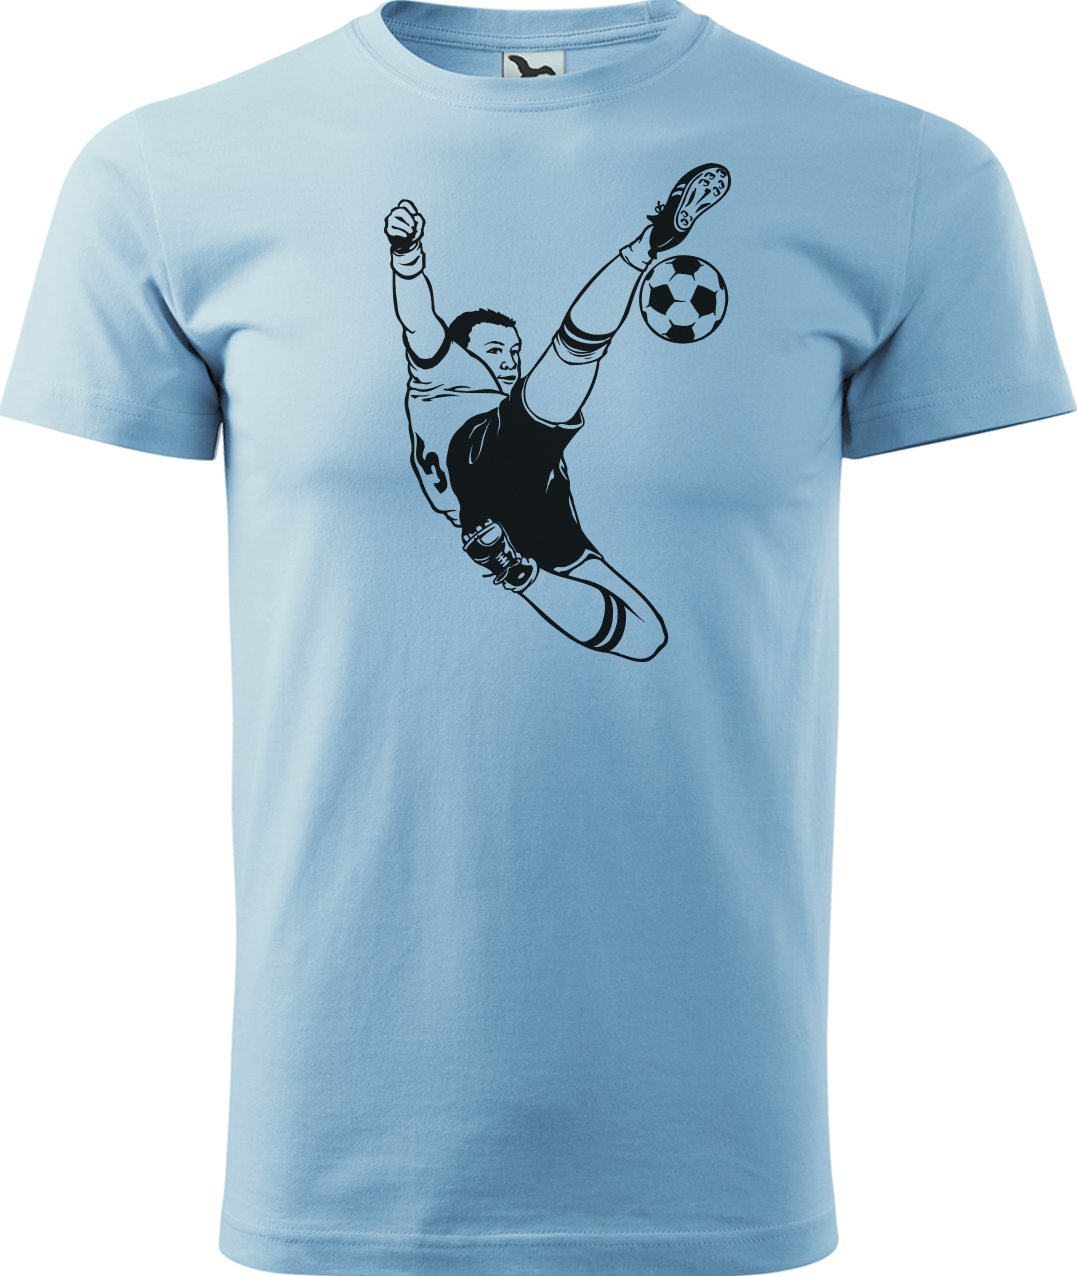 Tričko pro fotbalistu - Fotbalista s míčem Velikost: L, Barva: Nebesky modrá (15)